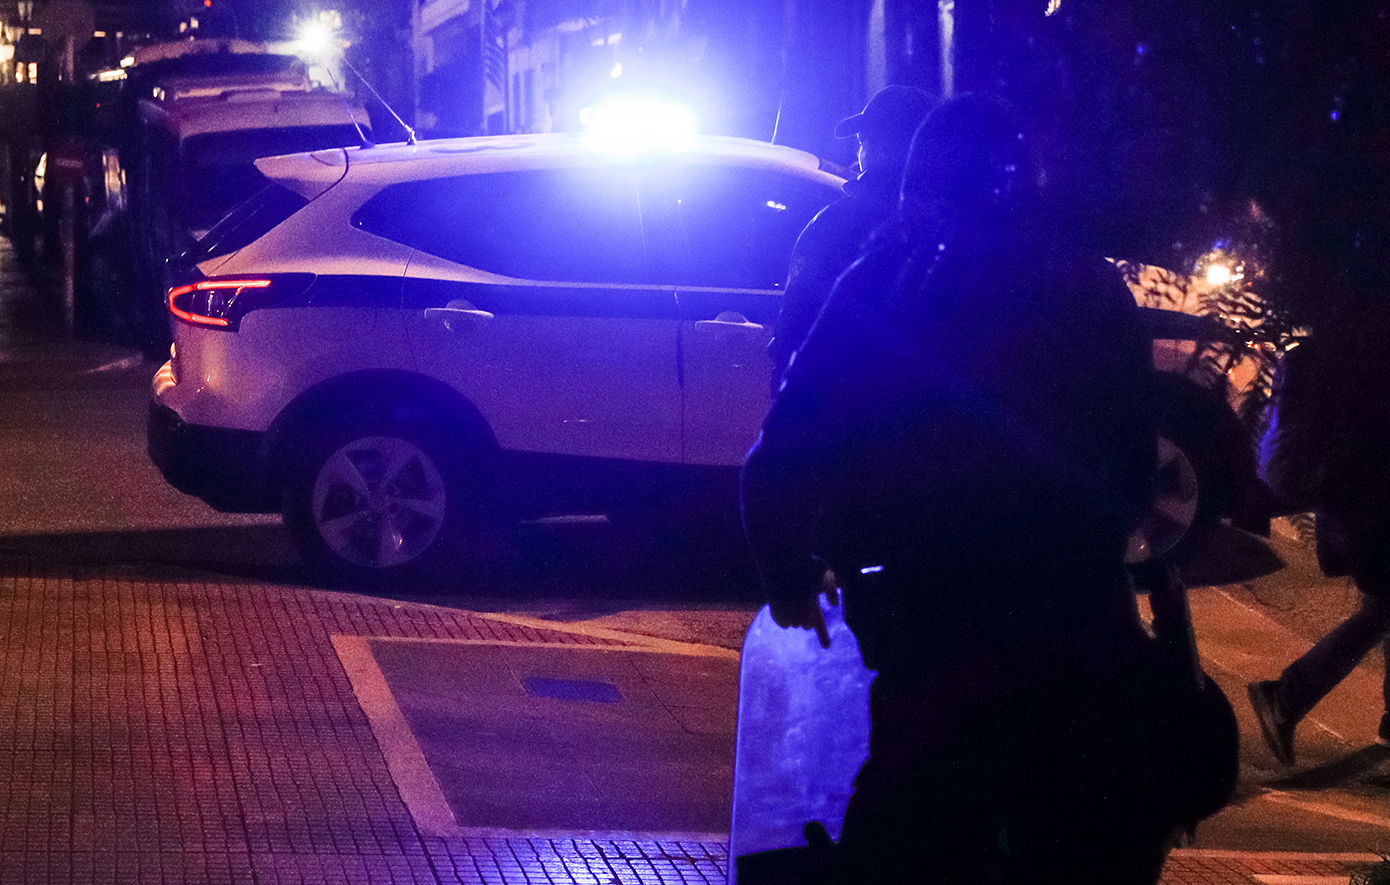 Ρομά επιτέθηκαν σε αστυνομικούς στο Χαλάνδρι και τους πήραν το περιπολικό – Βίντεο ντοκουμέντο